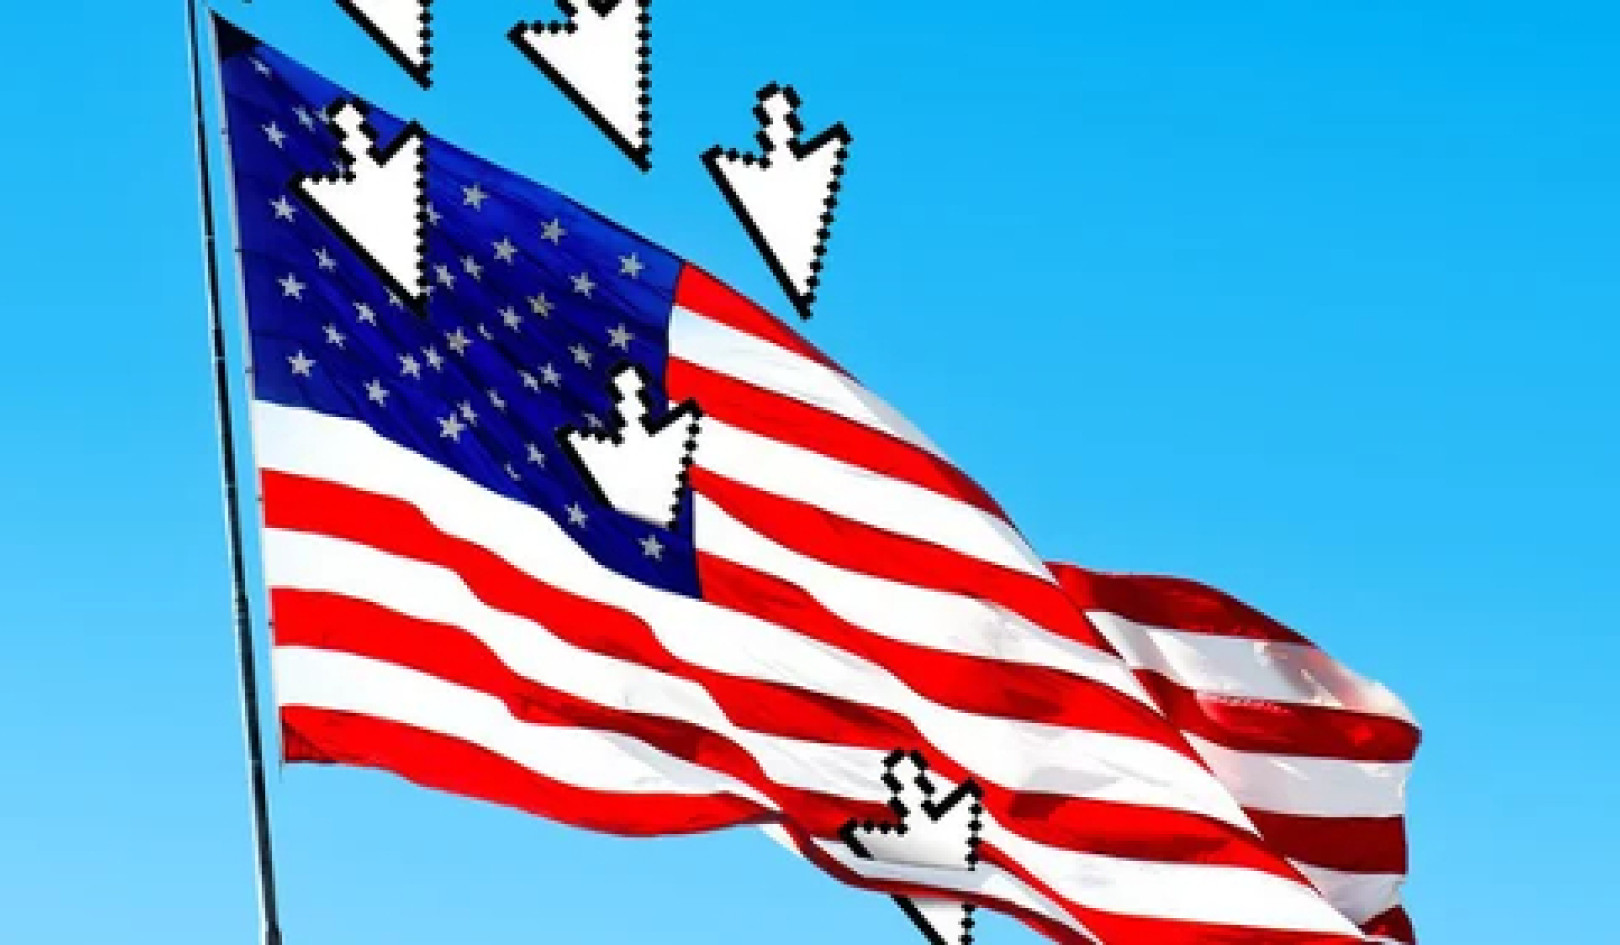 Hoe is de wereldwijde achteruitgang van de democratie gekoppeld aan sociale media?